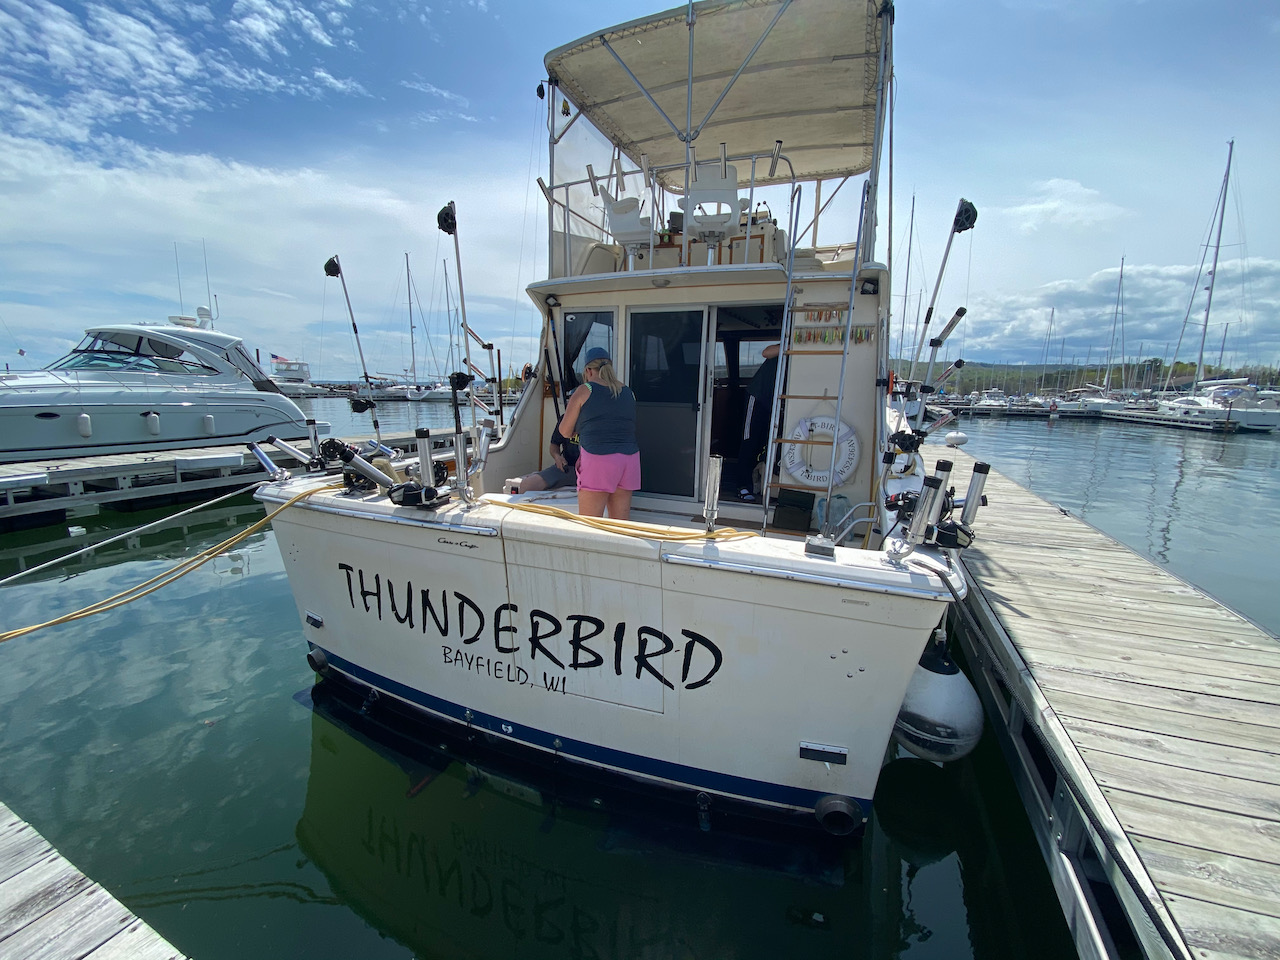 Thunderbird fishing boat docked